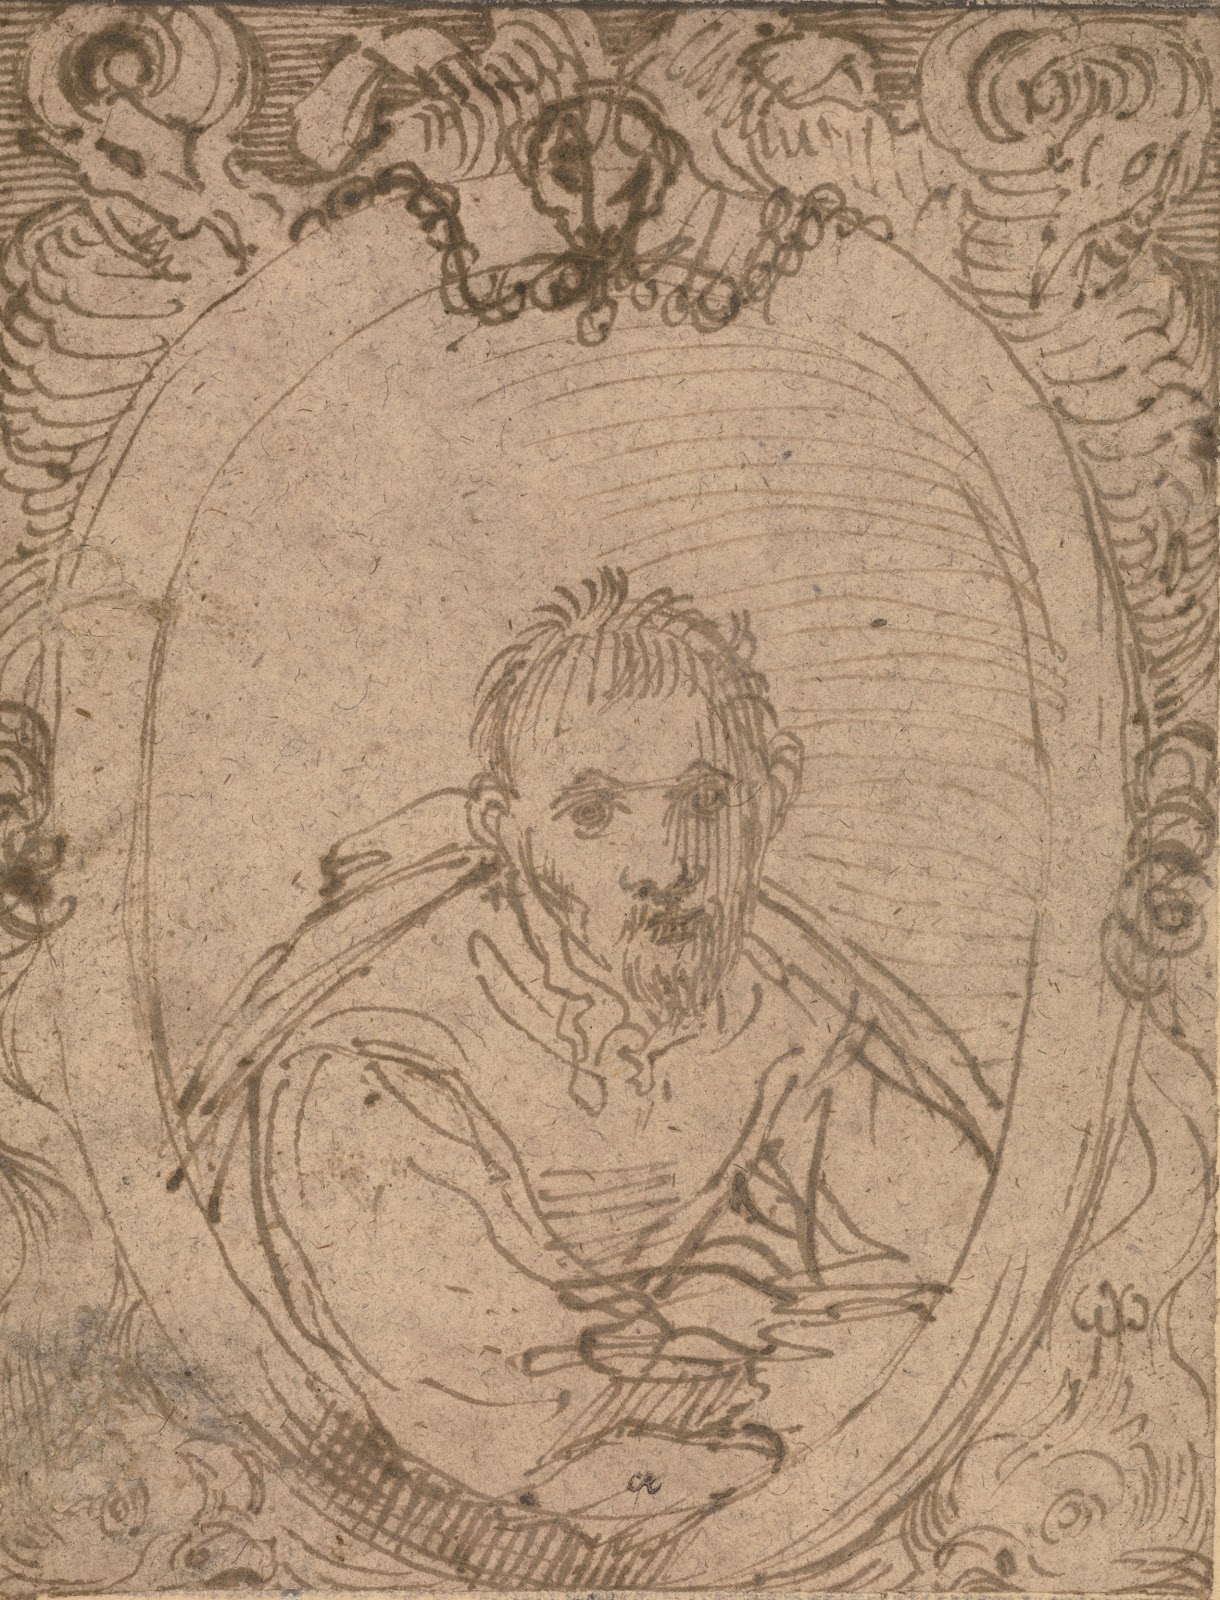 Annibale+Carracci-1560-1609 (45).jpg